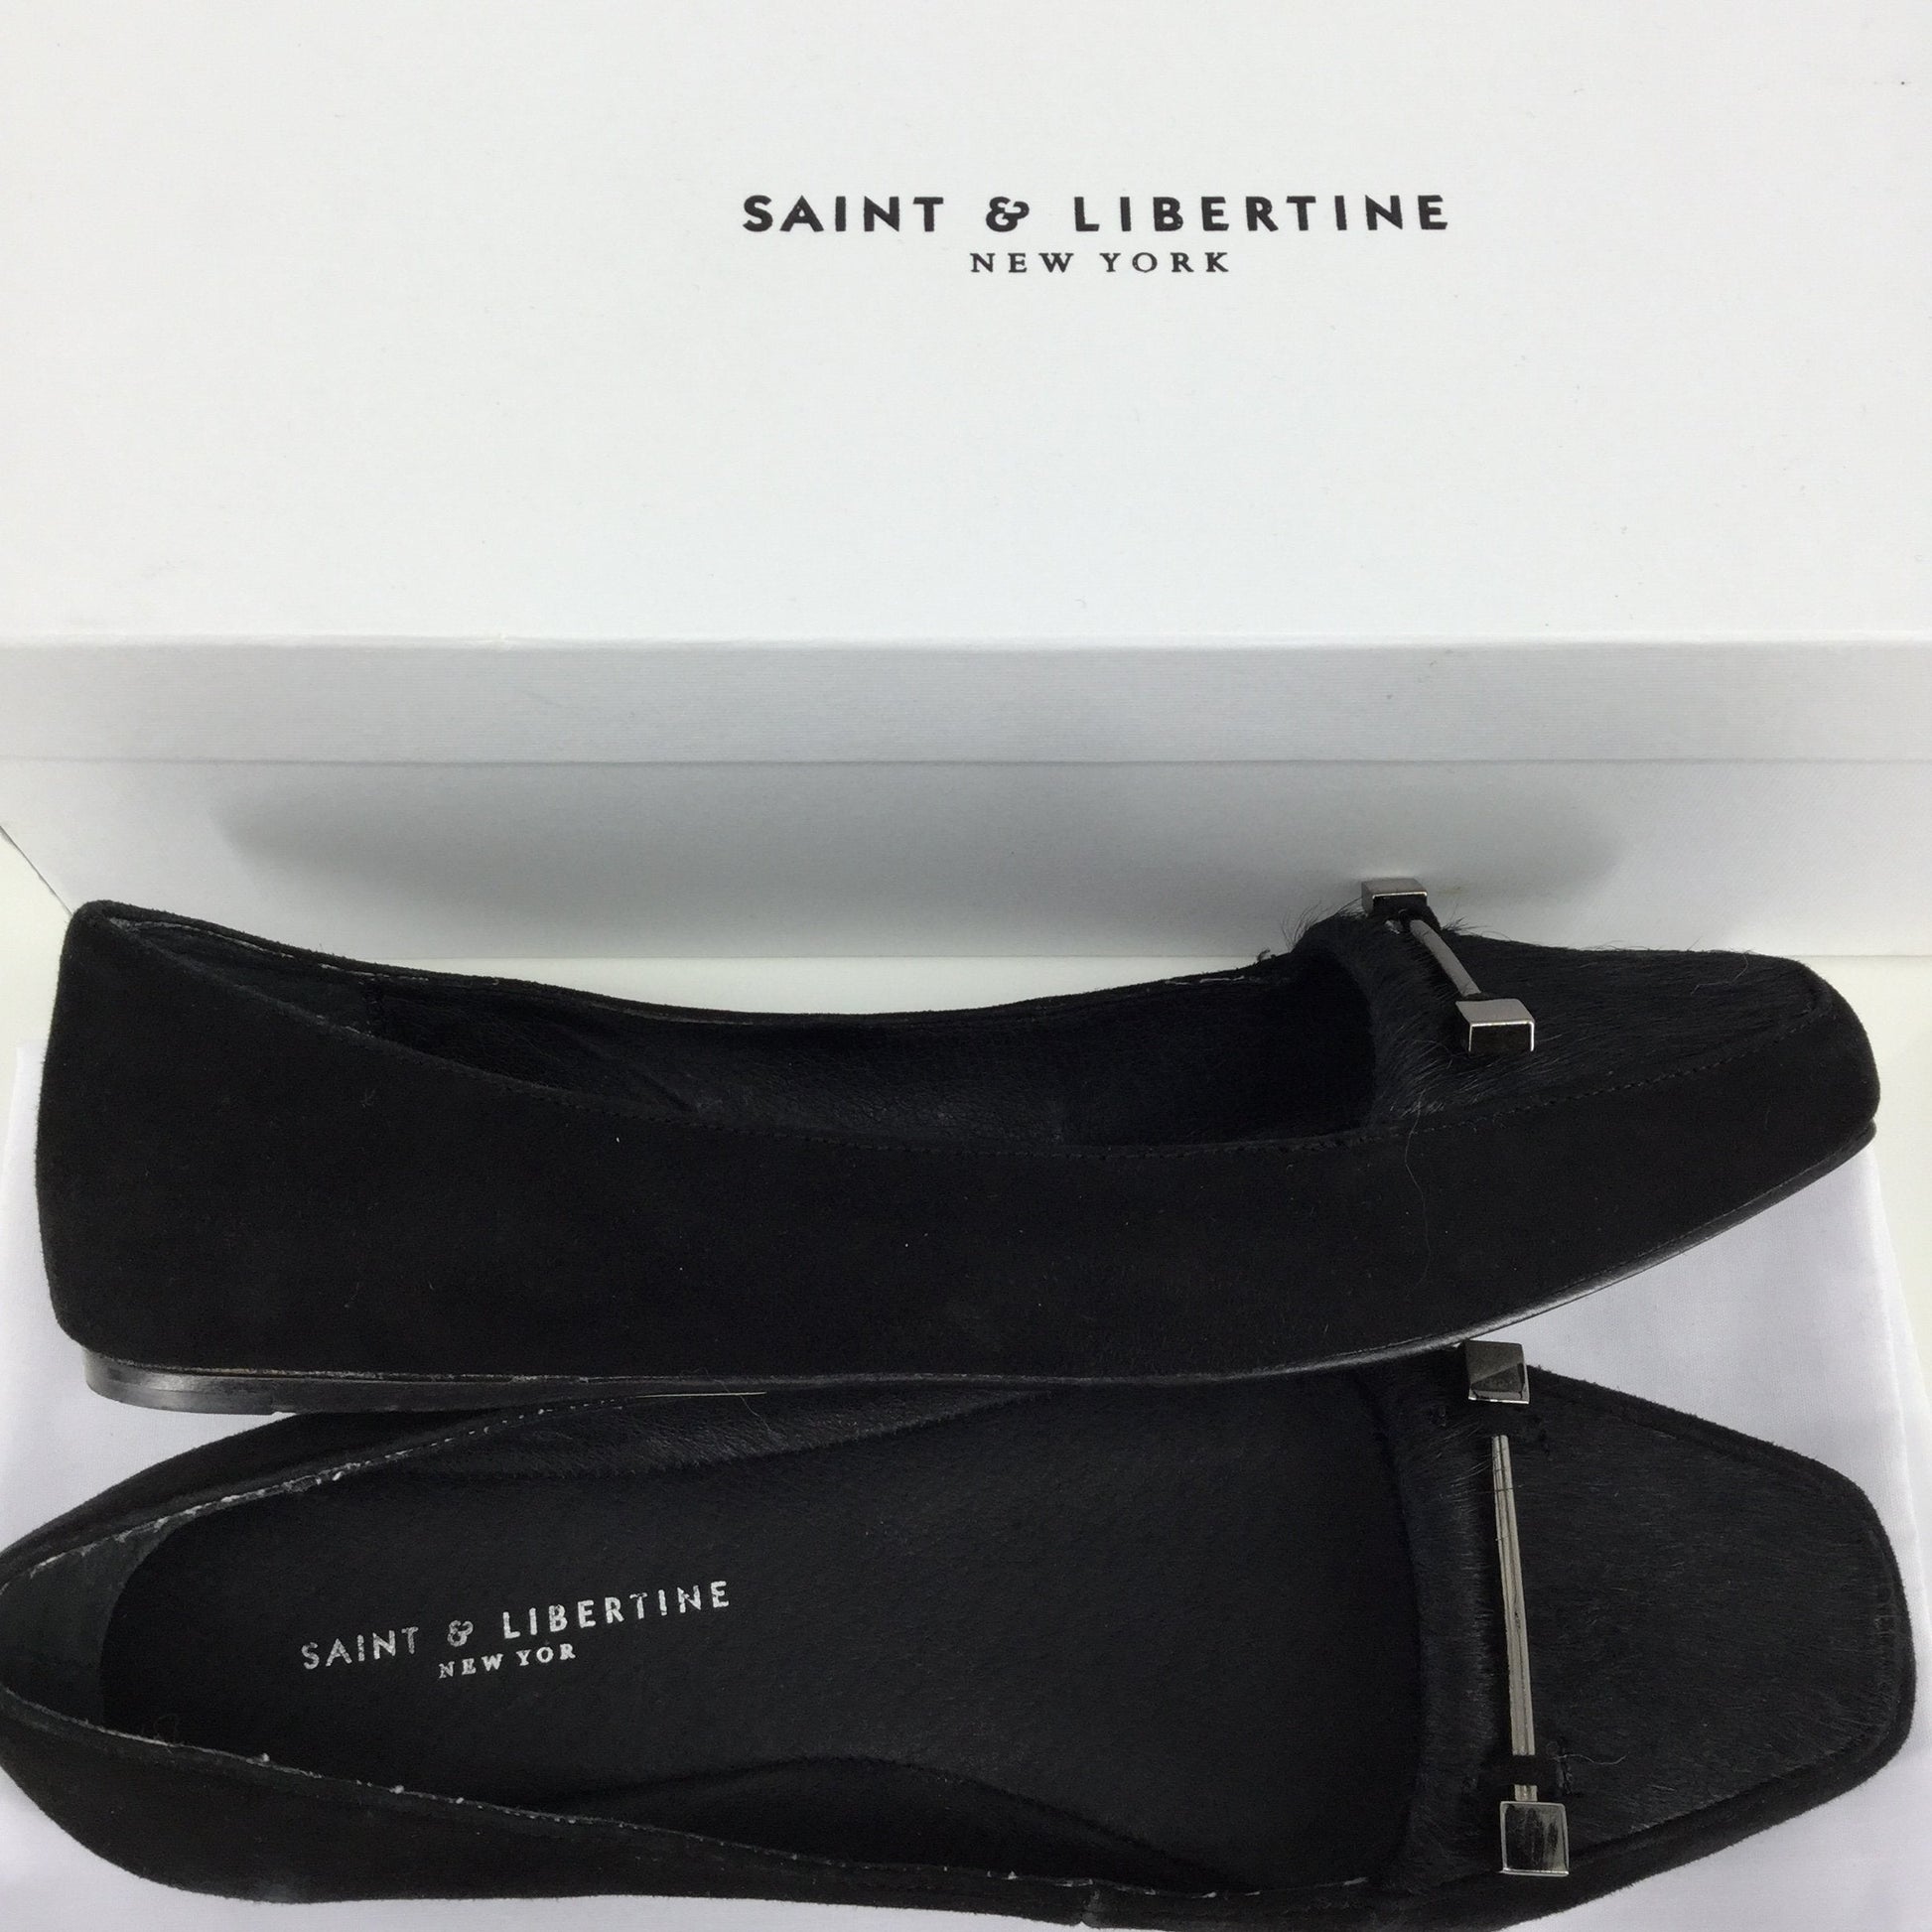 Saint & Libertine shoes size:6.5